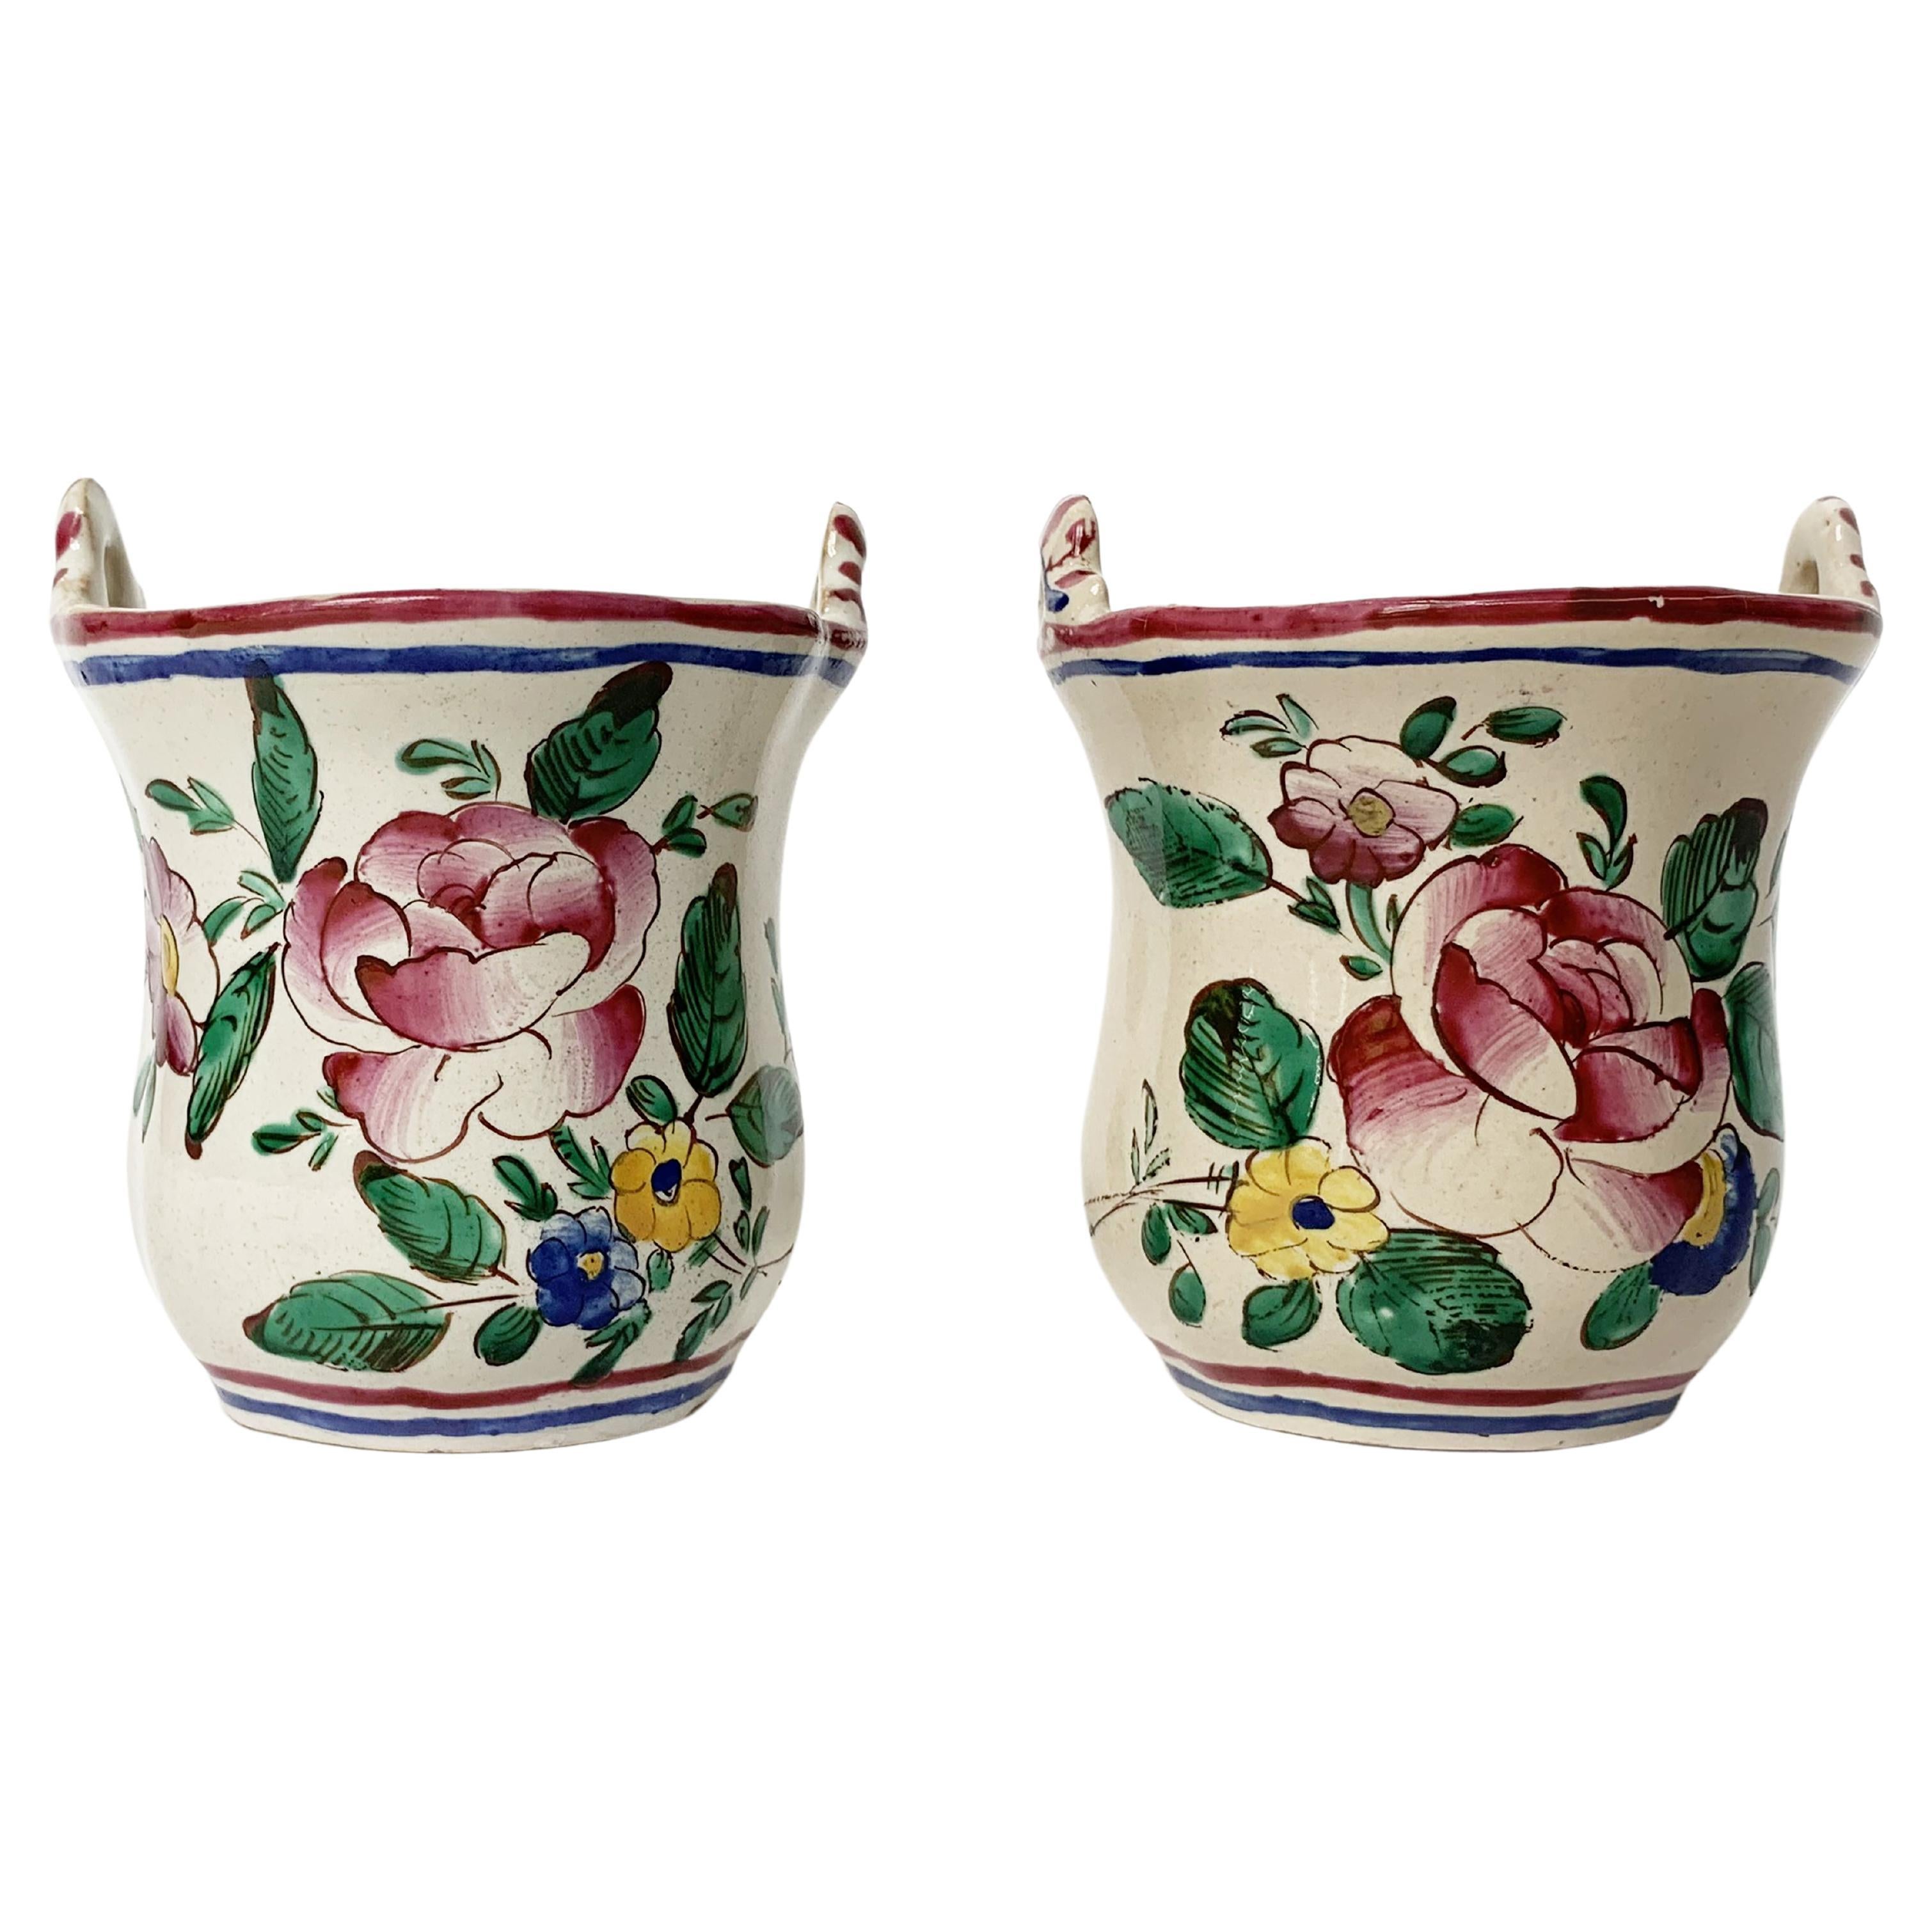 Small Maiolica Flower Pots, Ferretti Manufacture, Lodi, circa 1770-1780